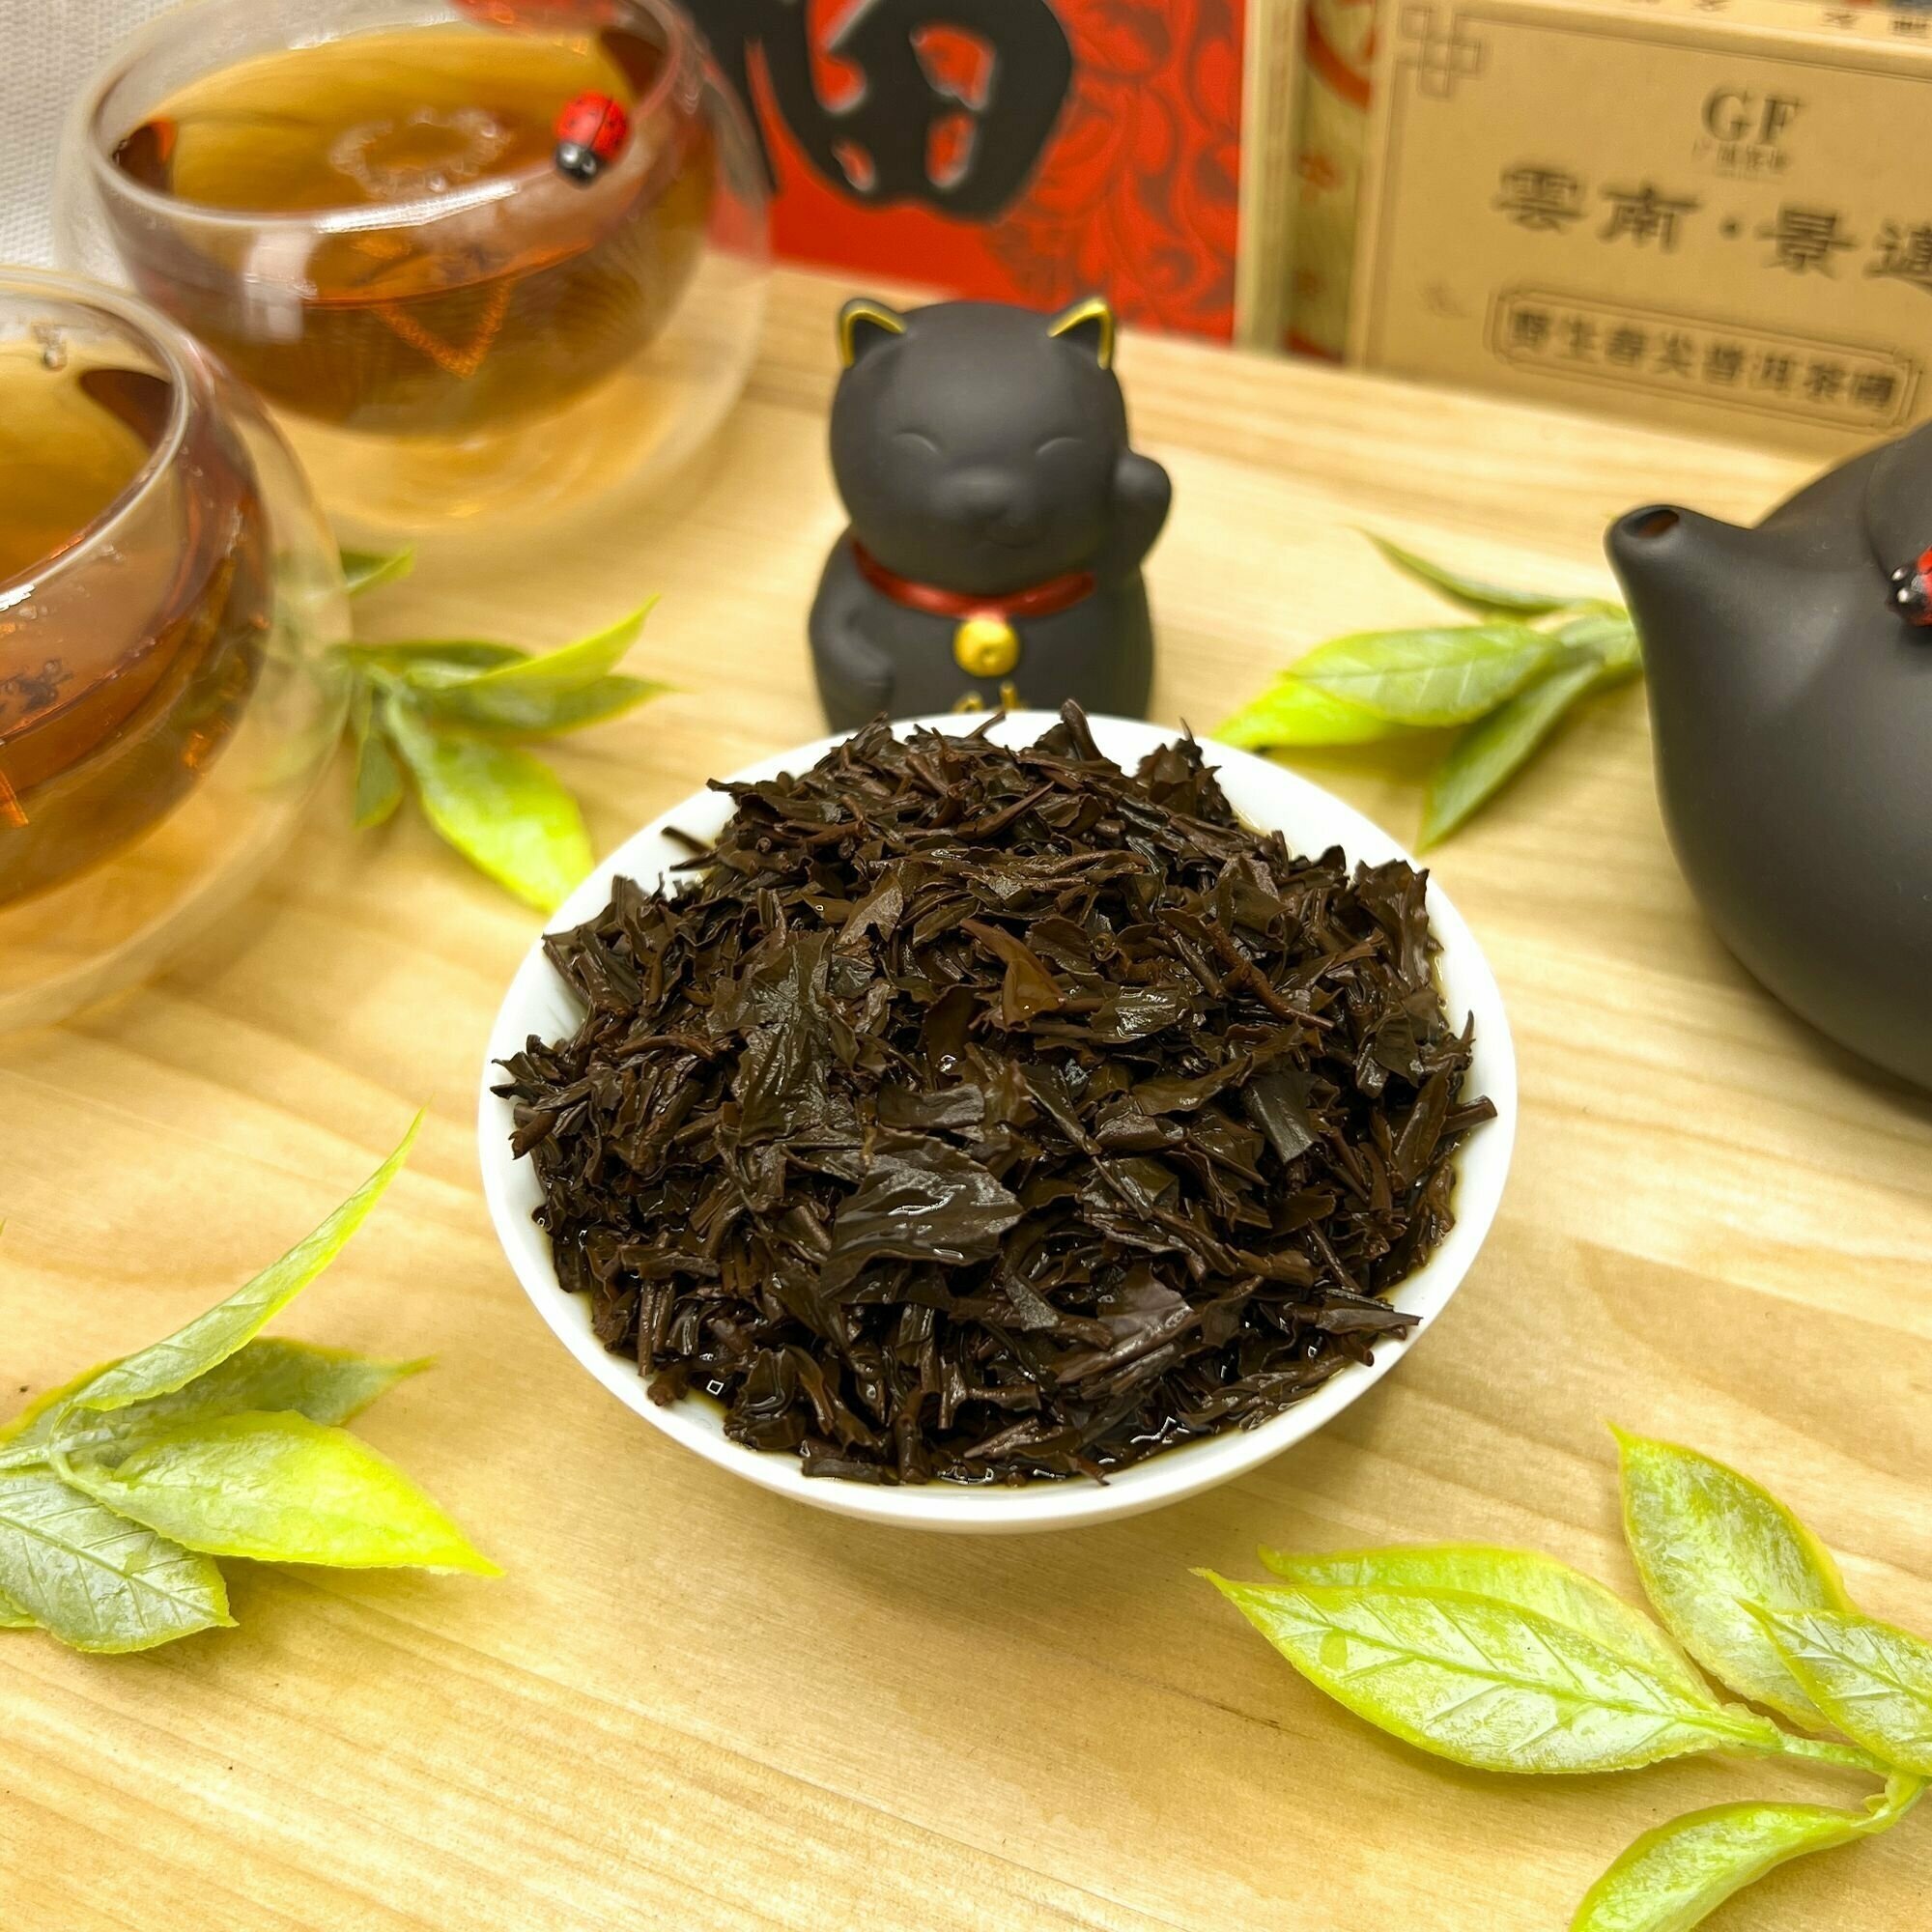 Индийский Черный чай Ассам (Nonaipara GTGFOP) Полезный чай / HEALTHY TEA, 150 гр